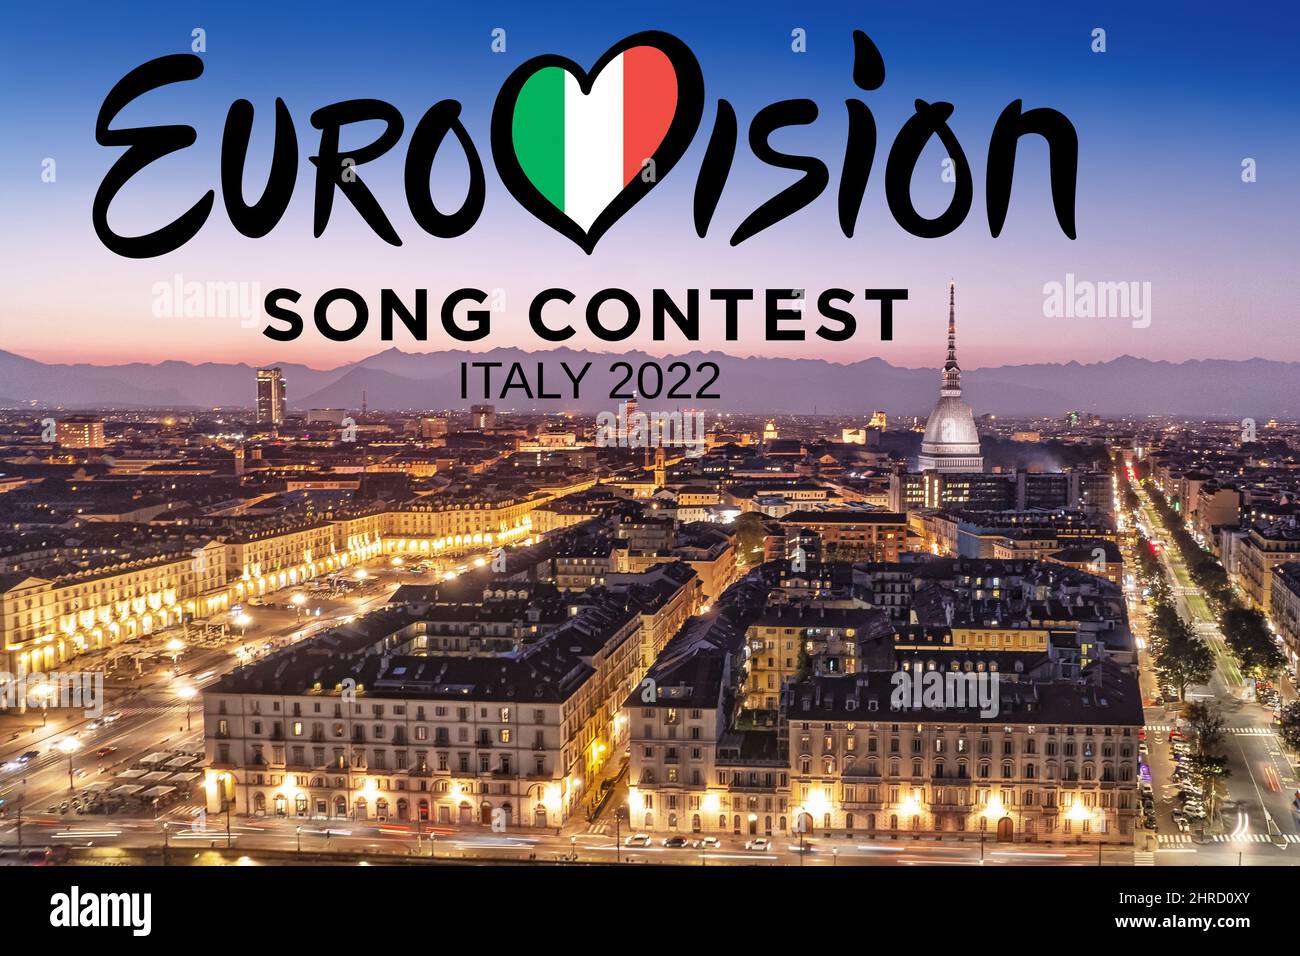 Logotipo del Festival de la Canción de Eurovisión en el paisaje urbano de Turín por la noche. La edición de 66th se celebrará en Turín en mayo de 2022. Turín, Italia - febrero 2022 Foto de stock